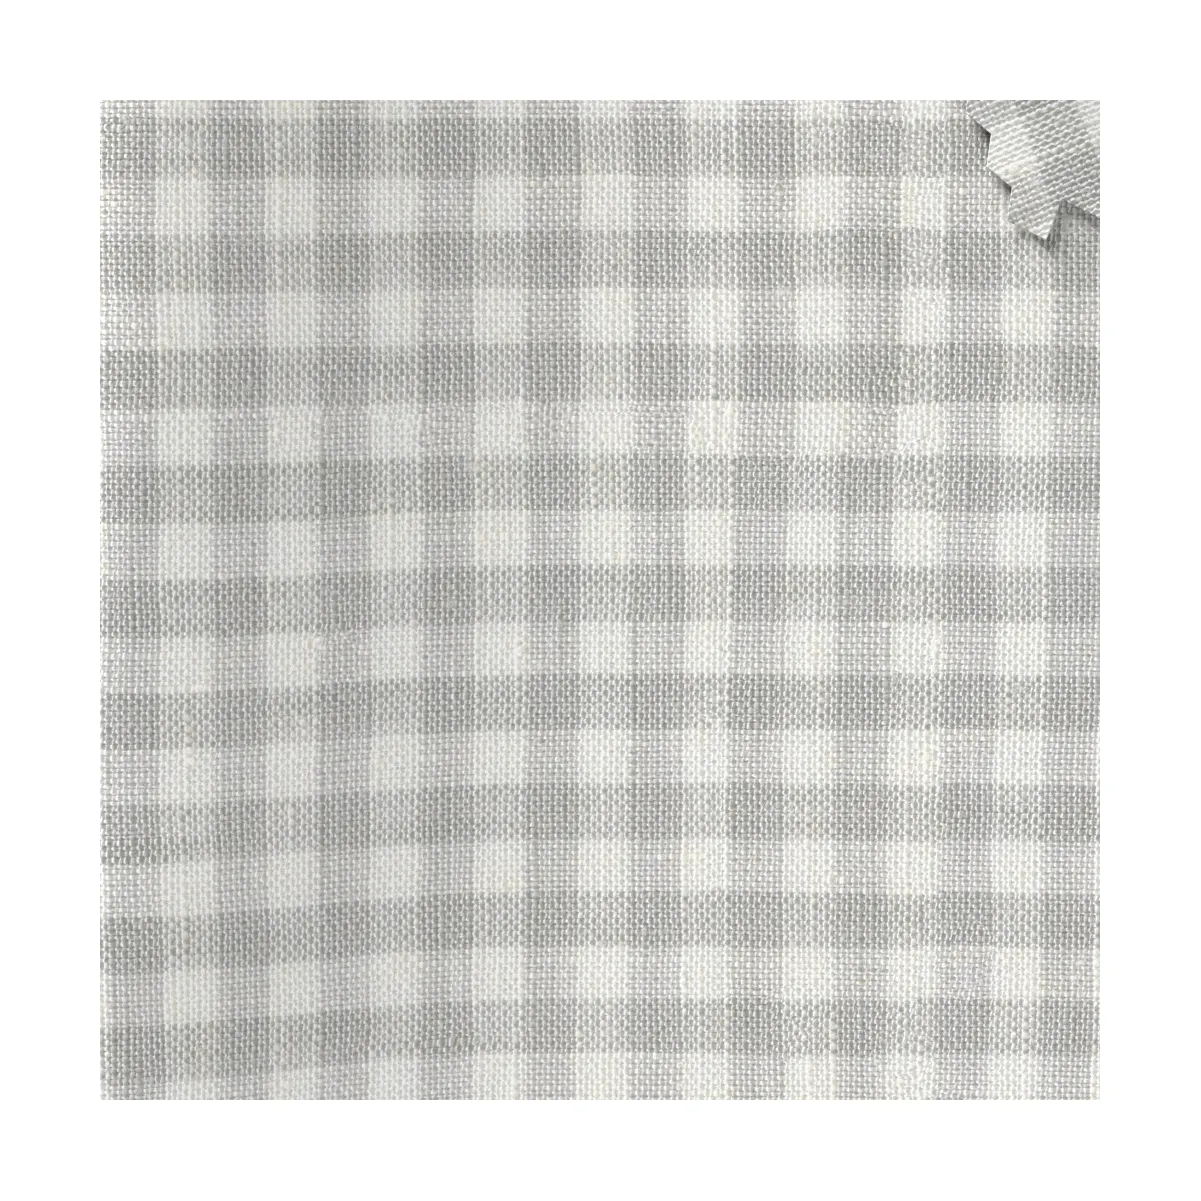 100% kain Linen benang dicuci dicelup Poplin padat kotak-kotak lembut dan periksa 100% kemeja Linen murni kain untuk pakaian